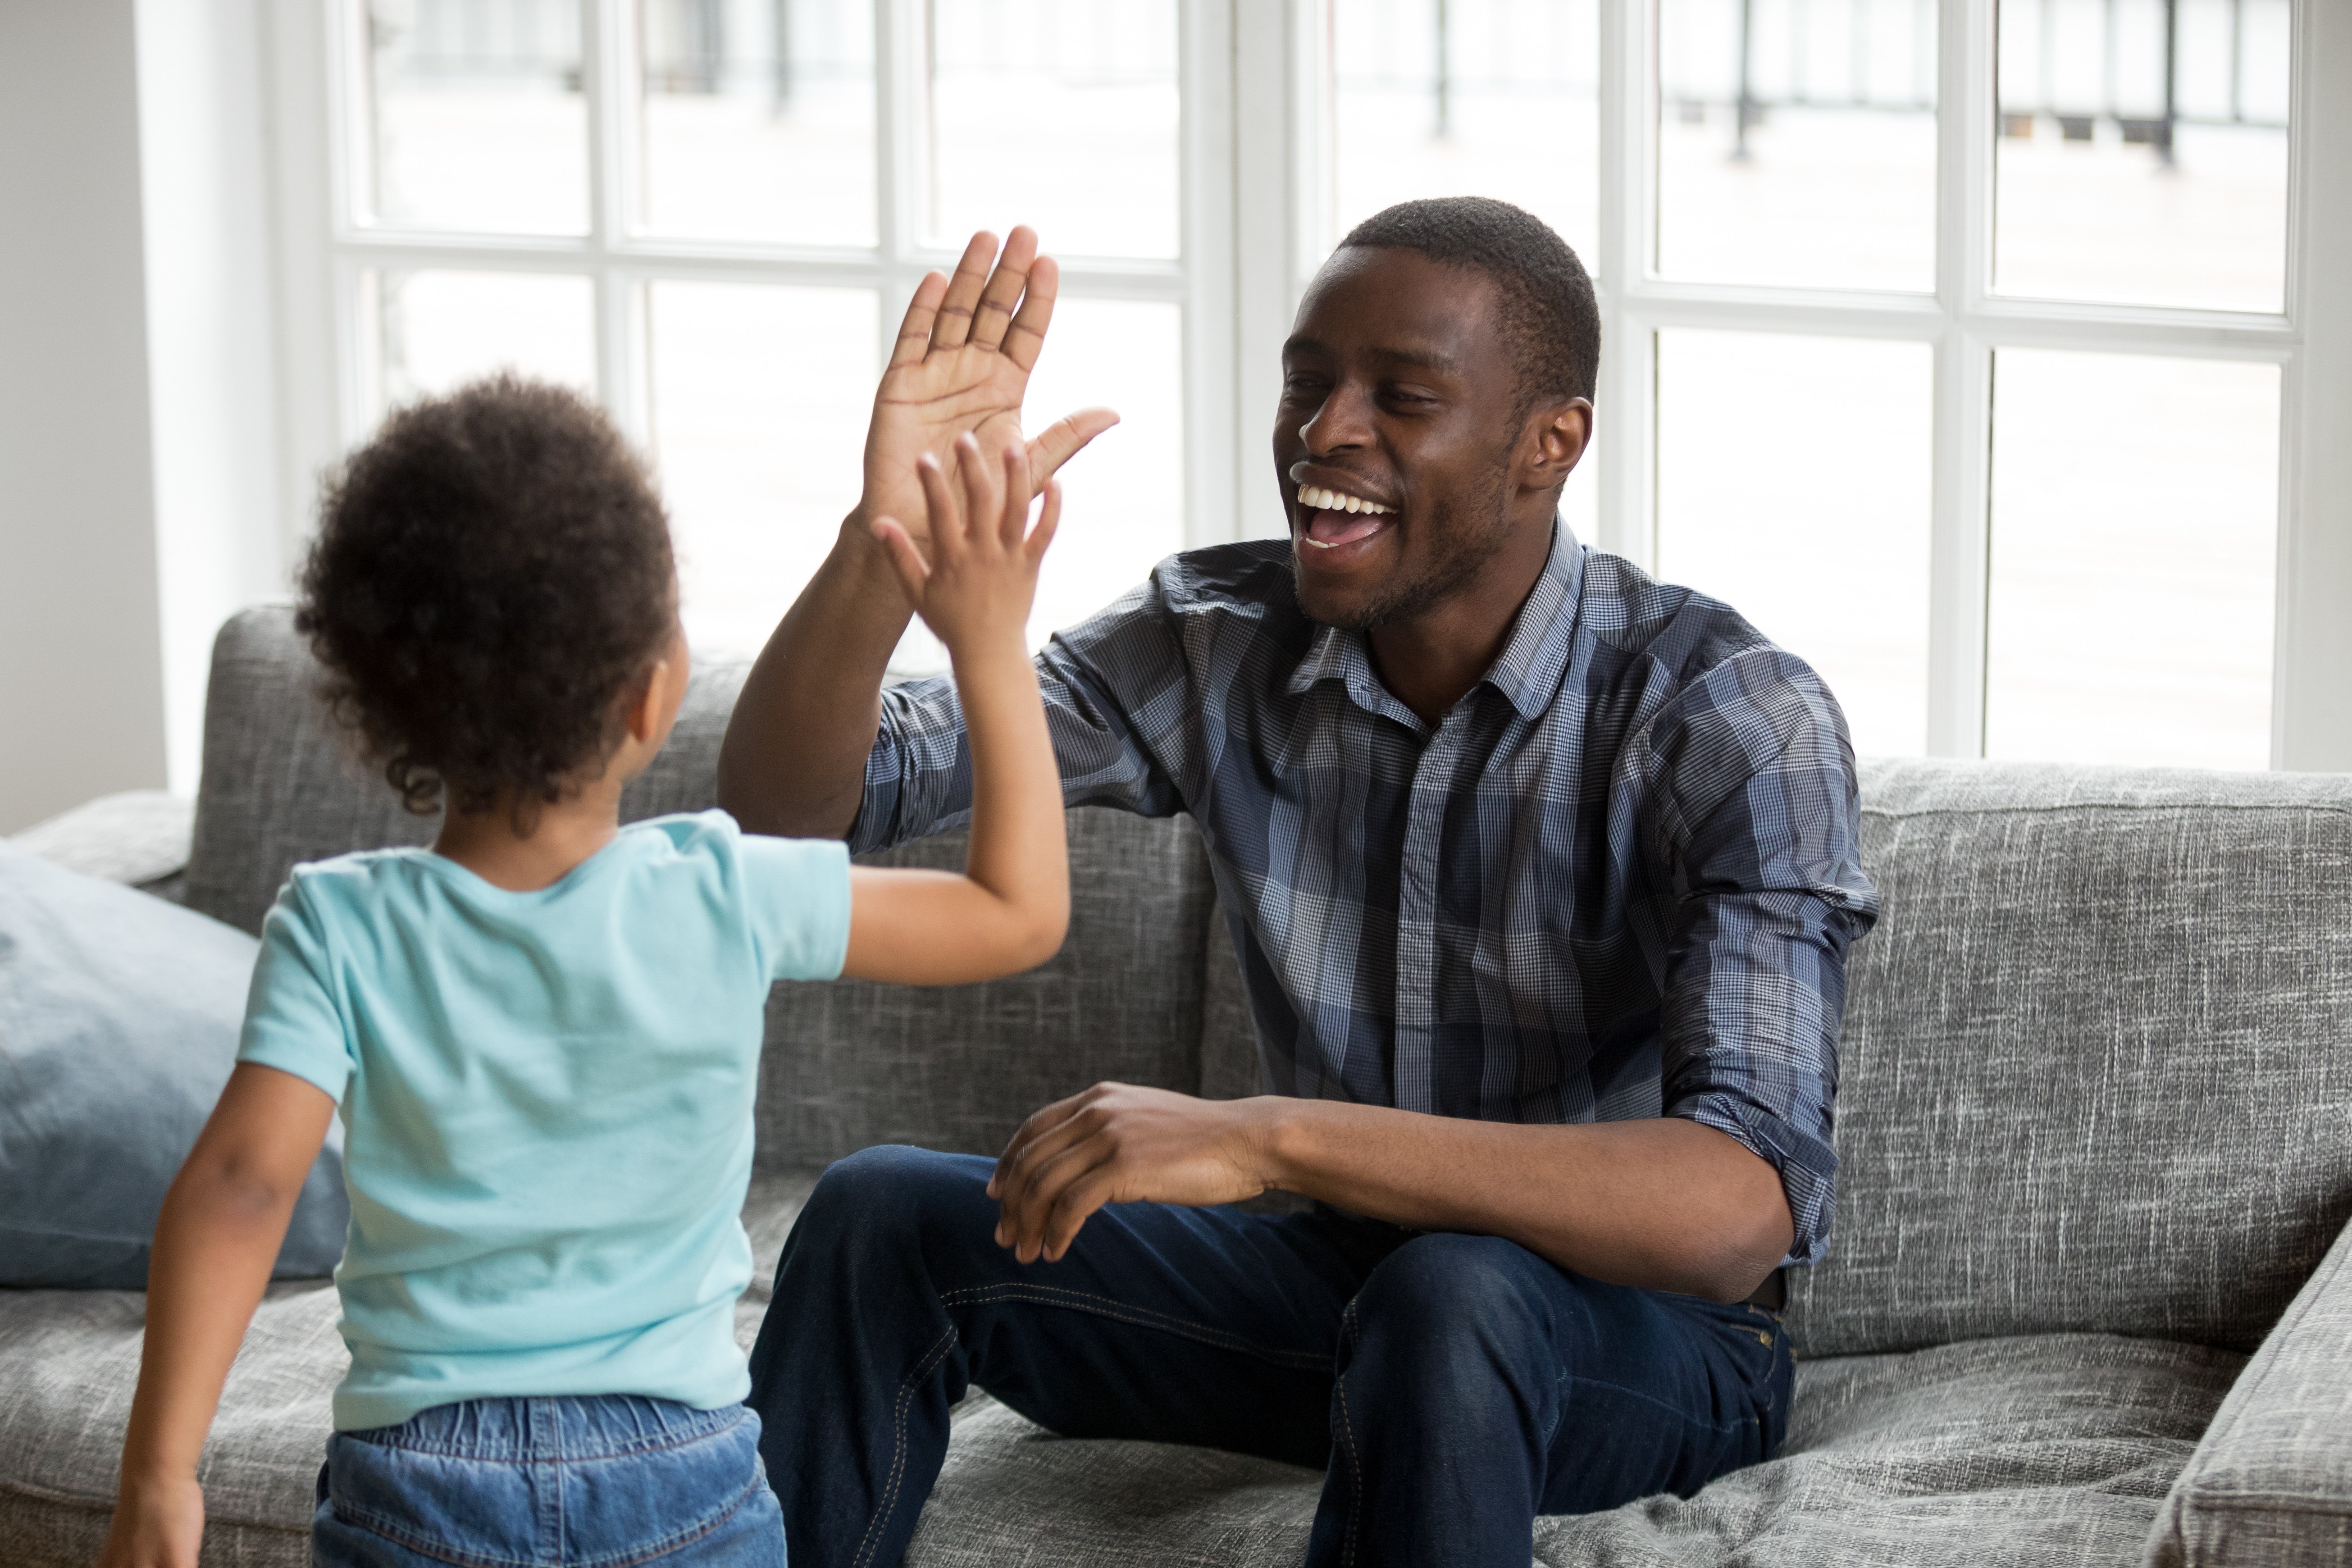 Successful Black Parenting